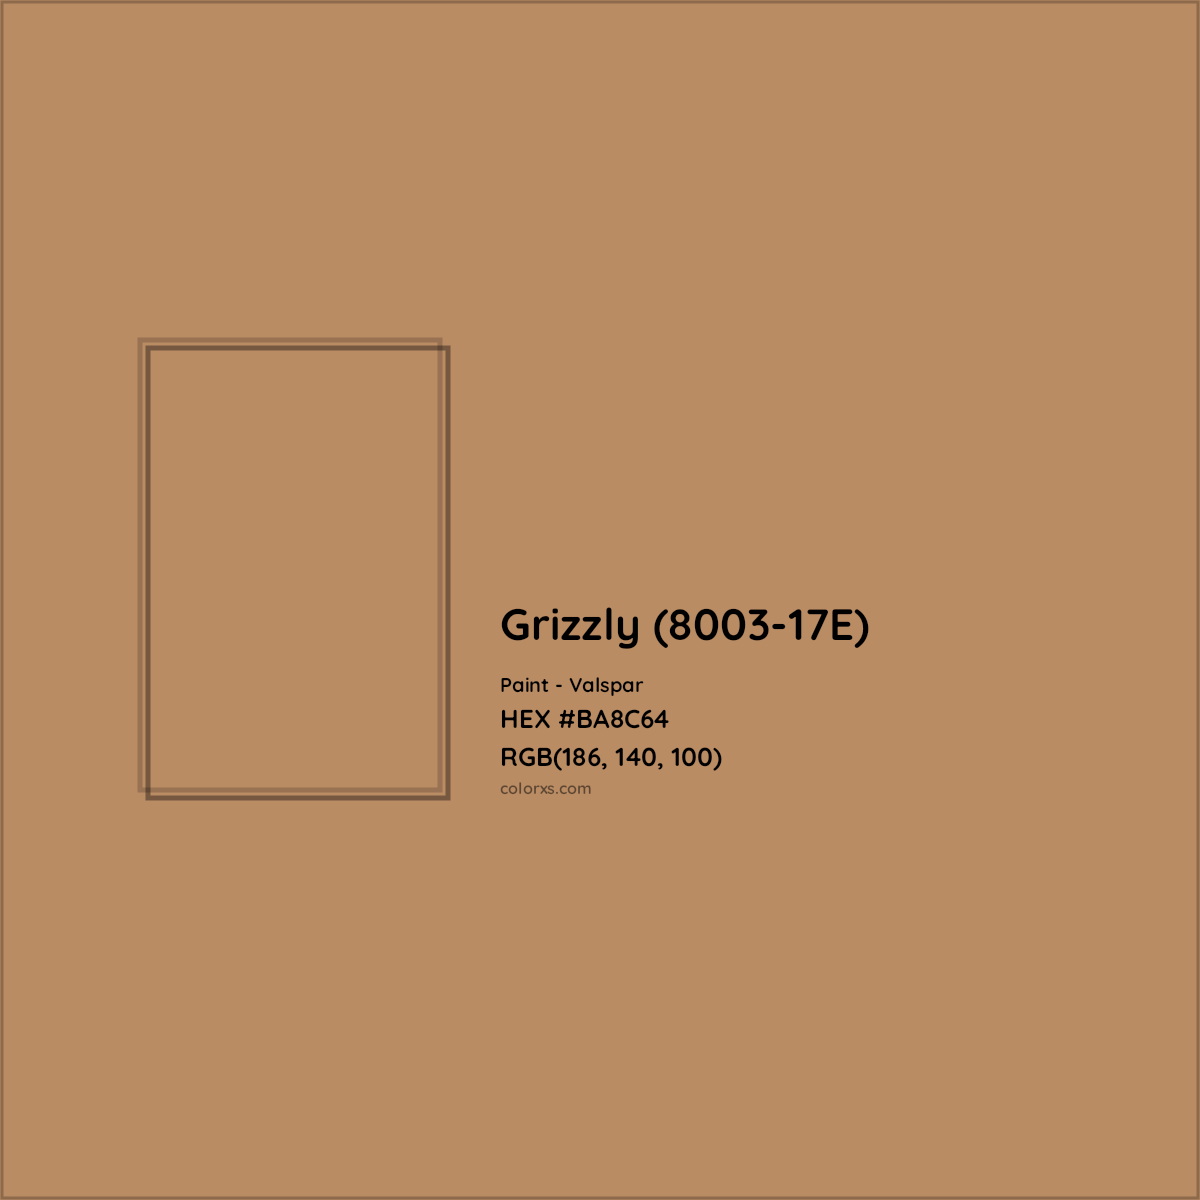 HEX #BA8C64 Grizzly (8003-17E) Paint Valspar - Color Code